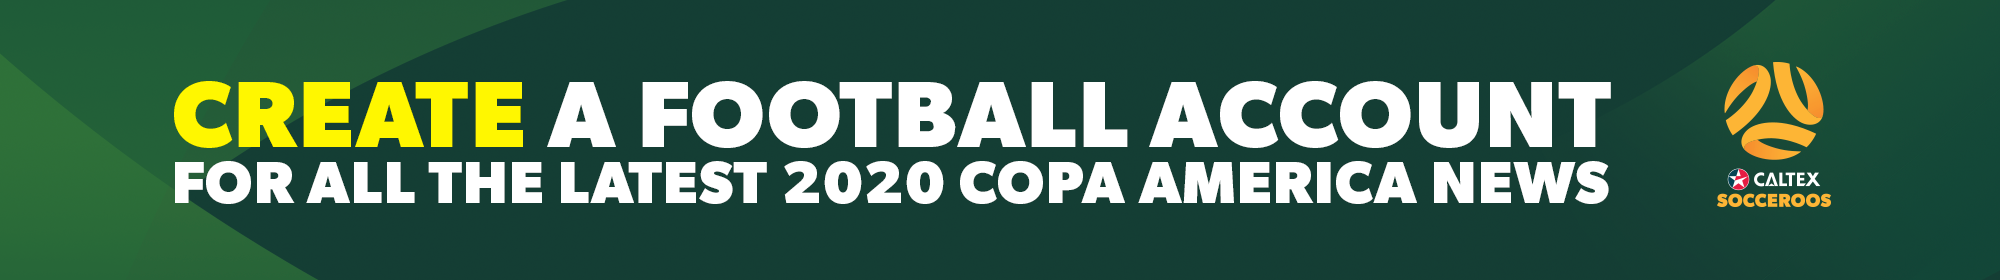 Copa-America-Socceroos-Account